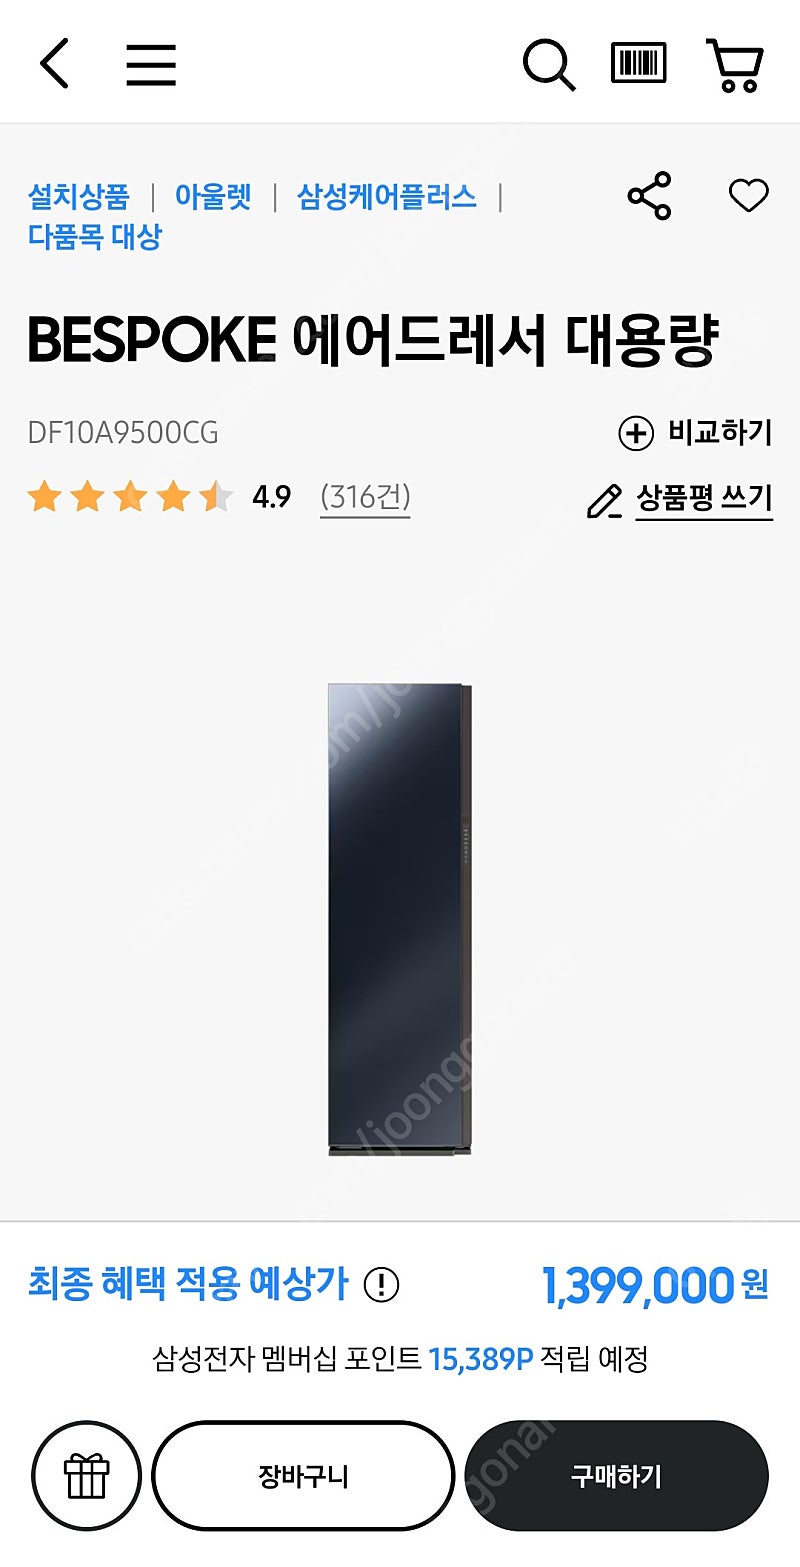 삼성 에어드레서 DF10A9500CG 완전 새상품 배송지 변경 (회사 경품으로 받았는데 자취라 자리가 없어요)